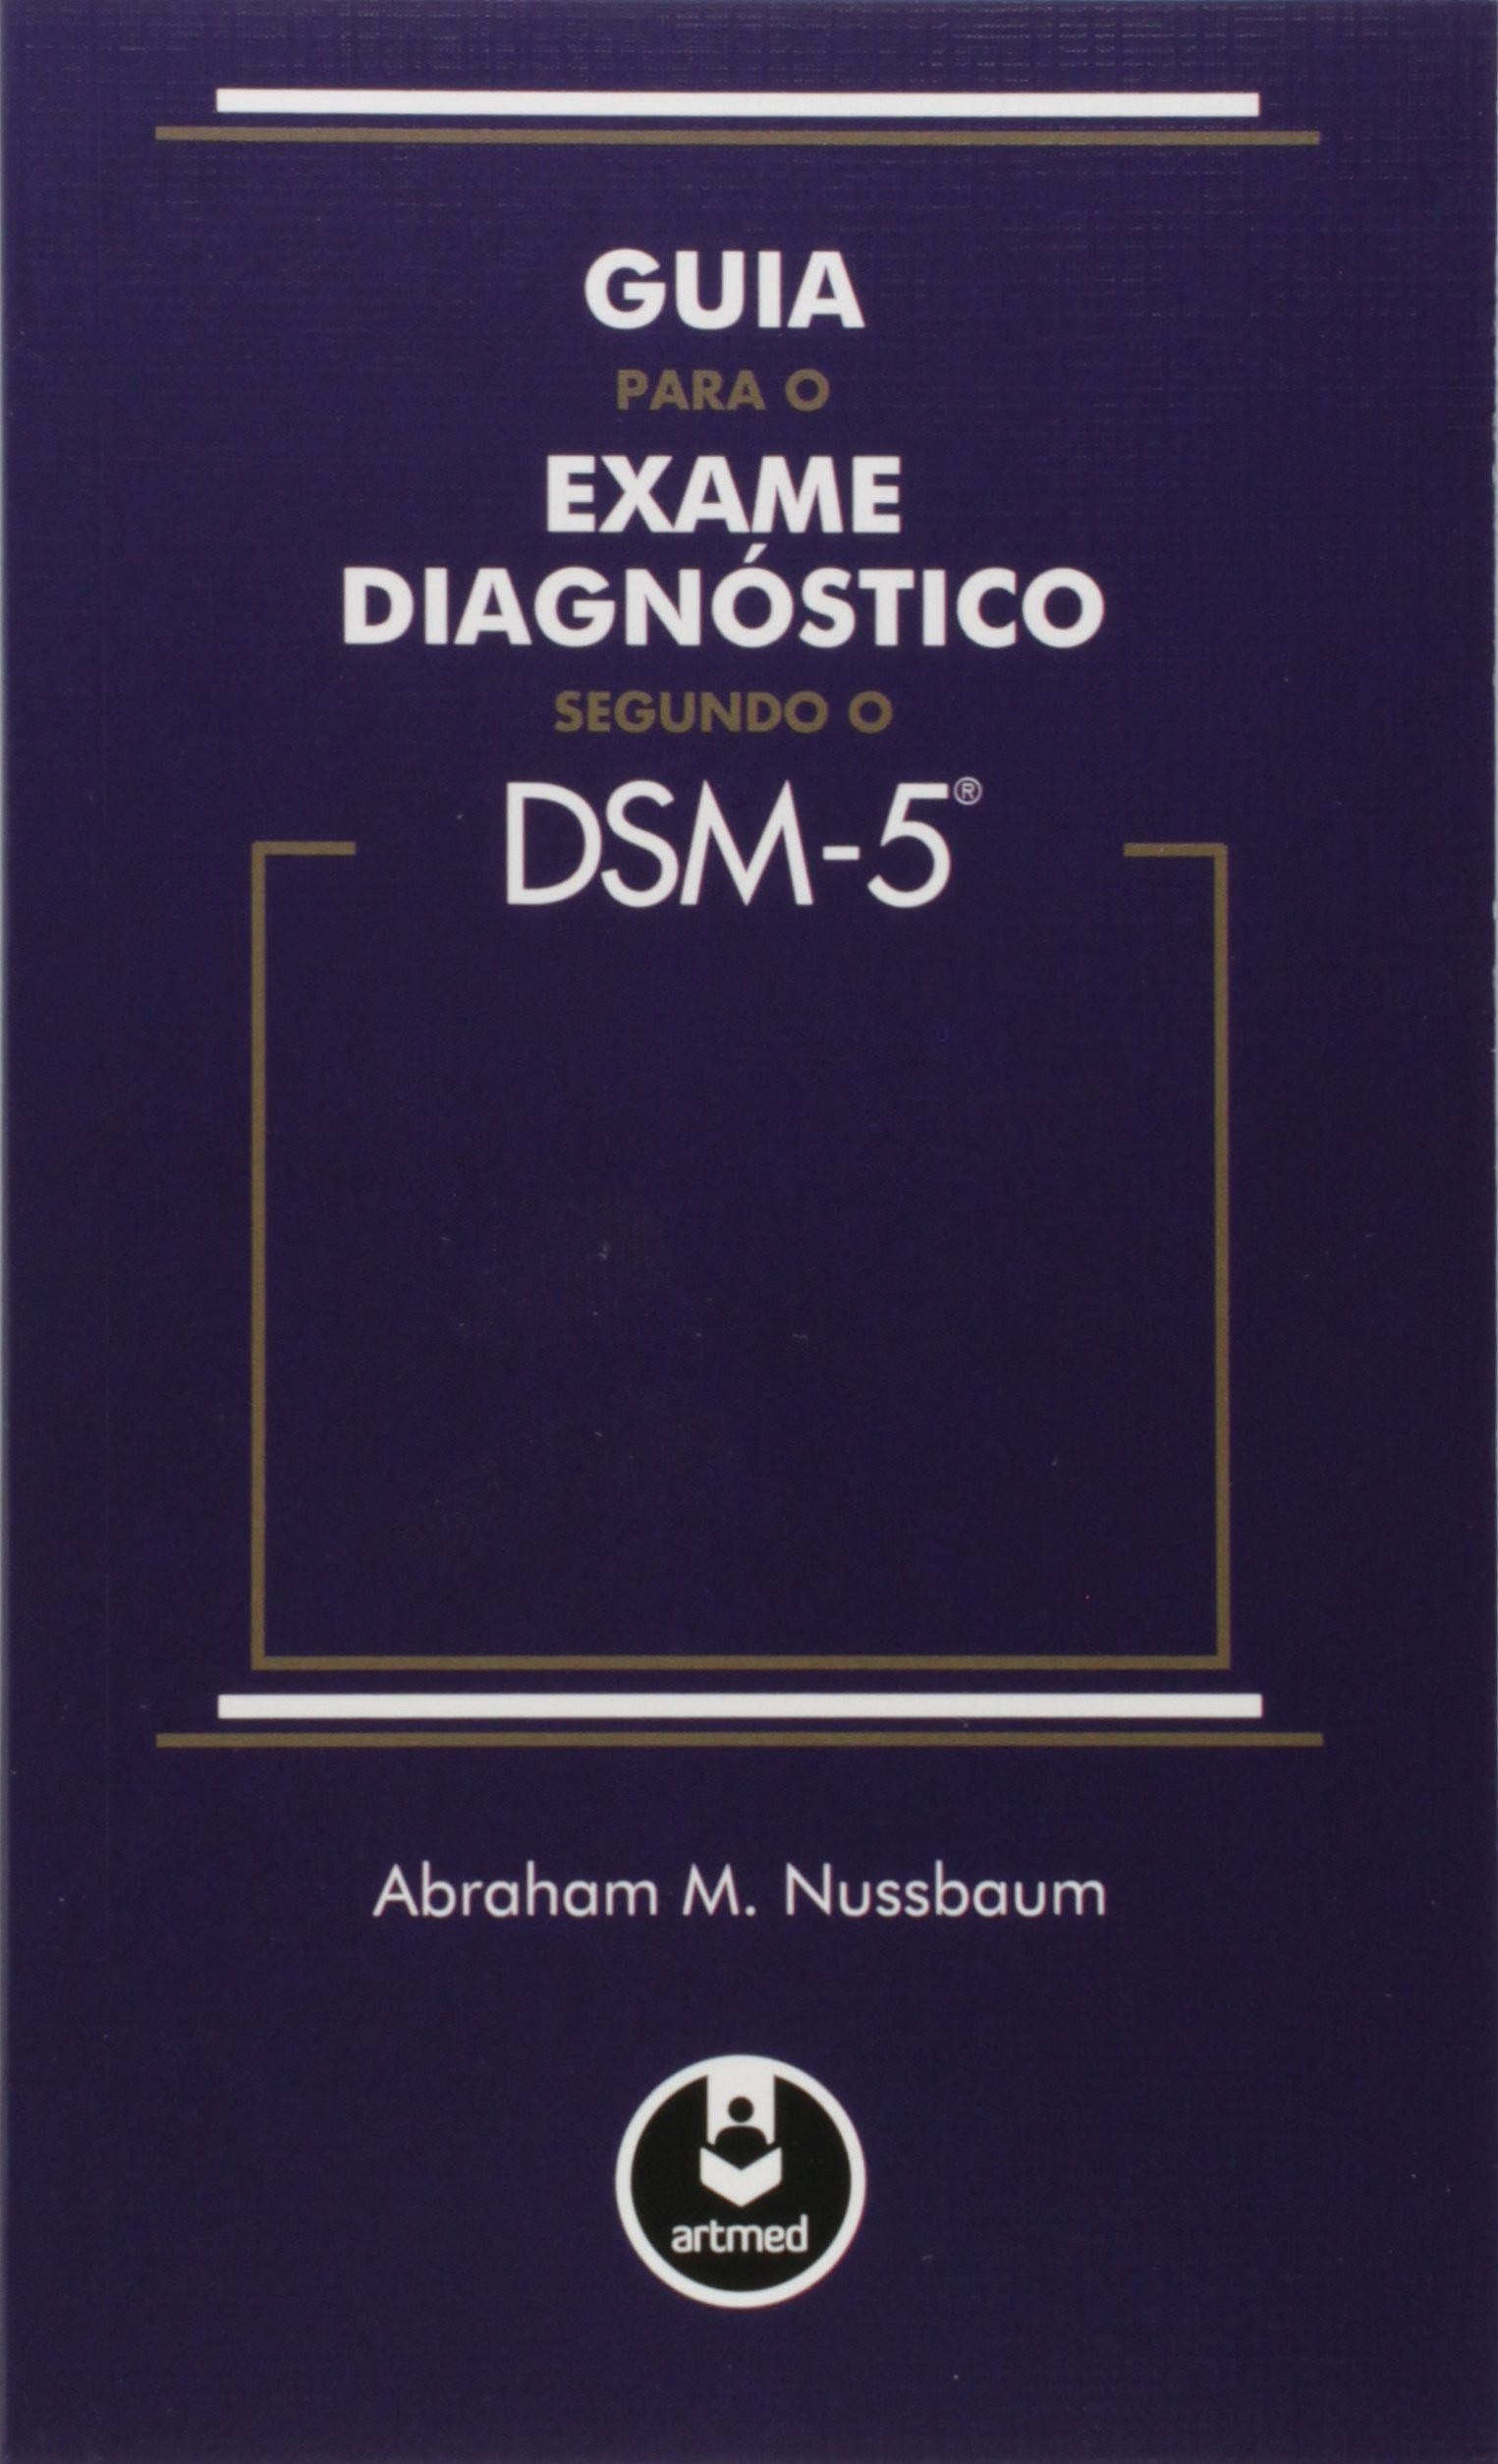 GUIA PARA O EXAME DIAGNOSTICO SEGUNDO O DSM-5